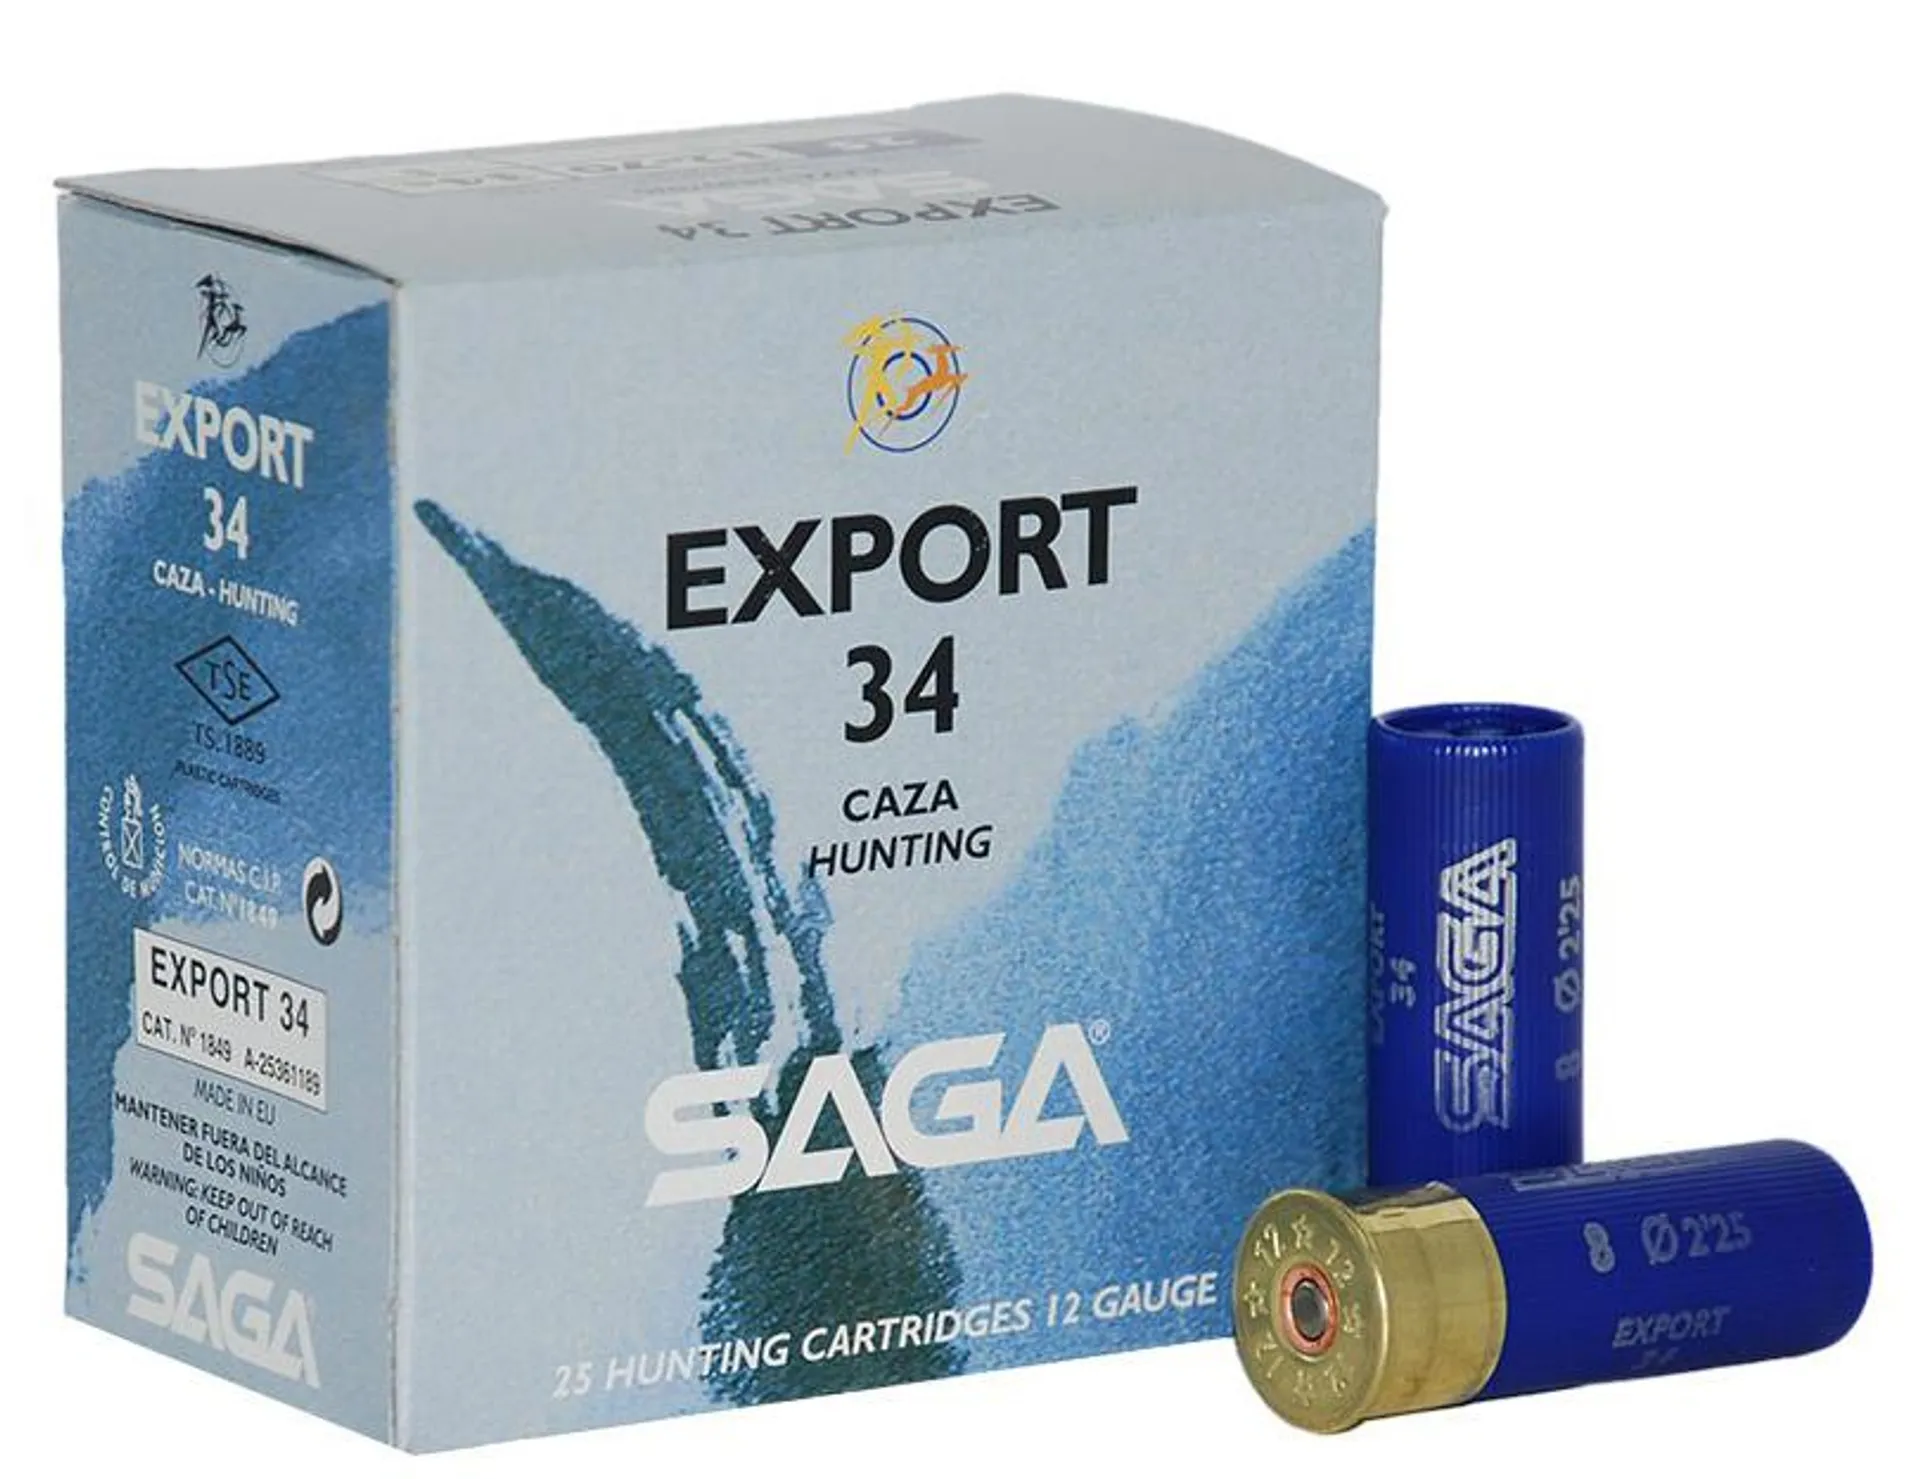 Caja de Cartuchos SAGA Top Export 34 (de 34 grs.)